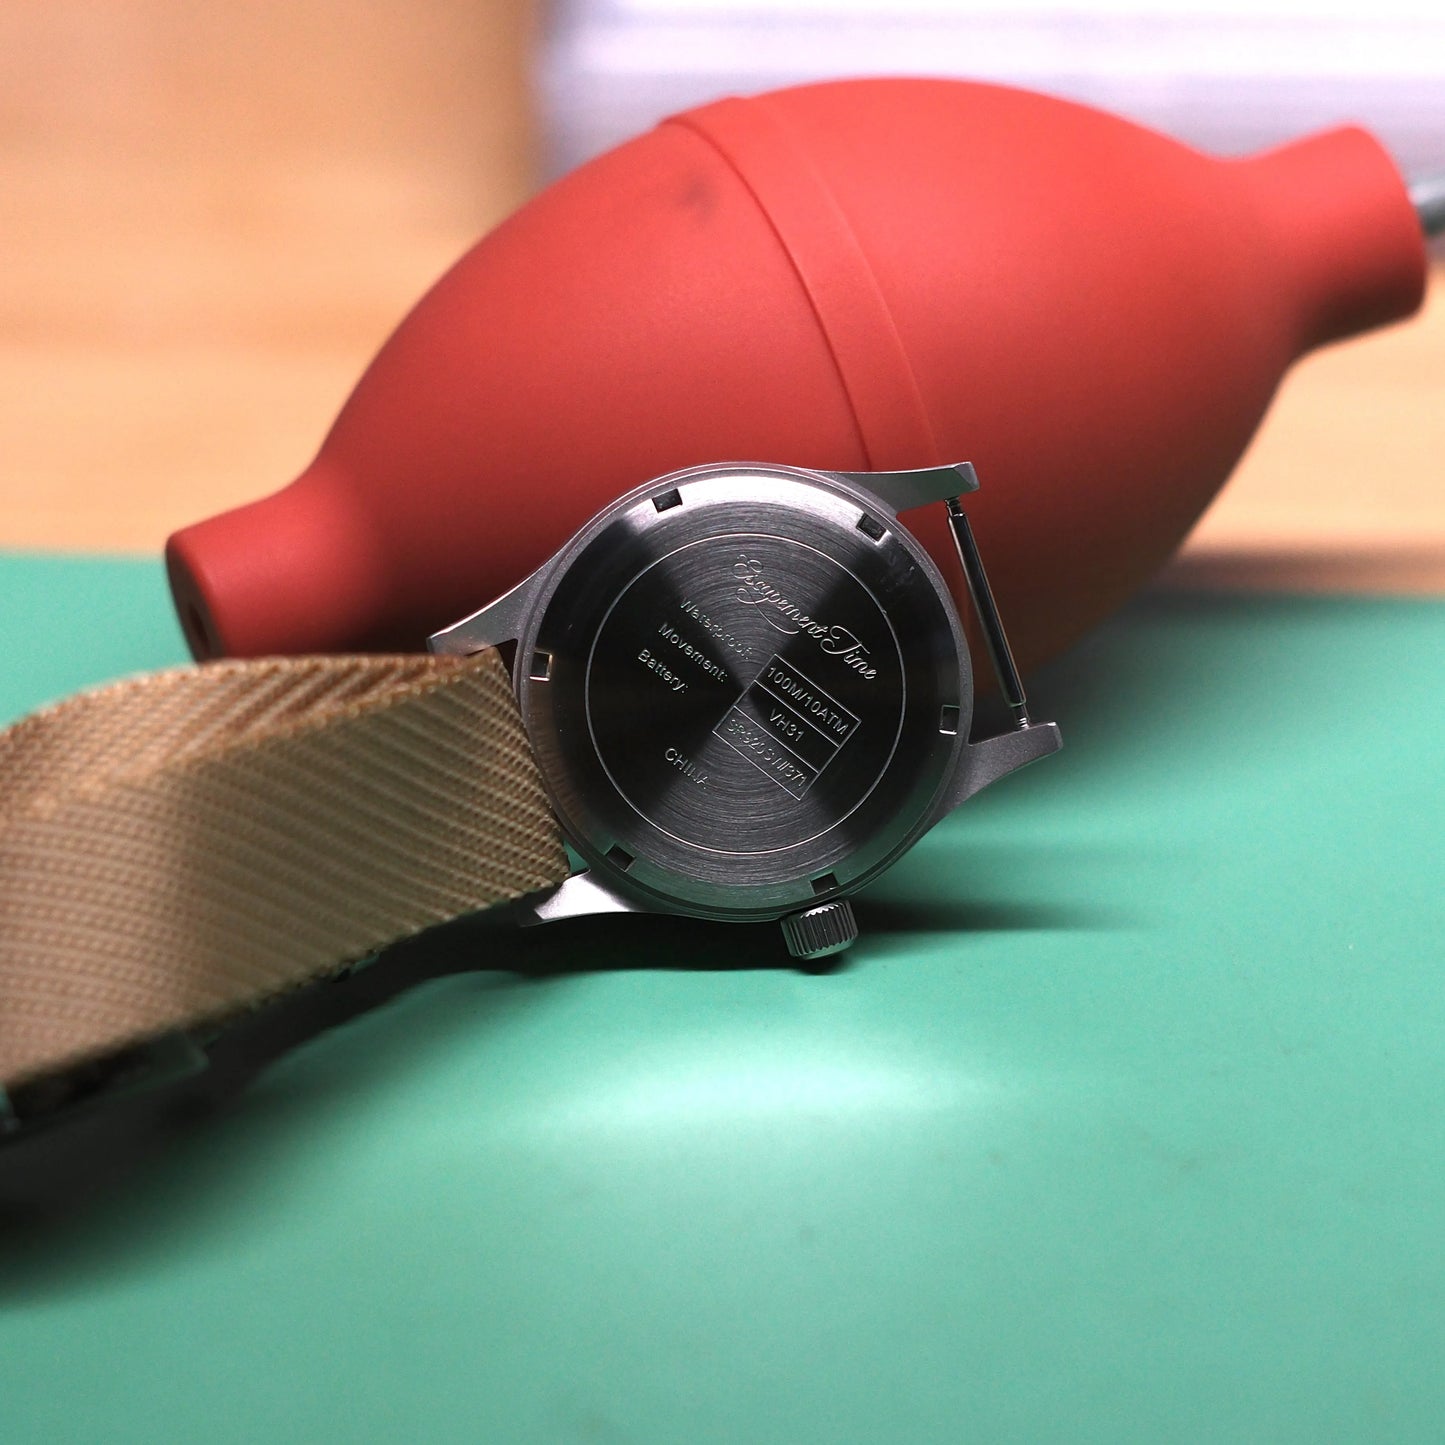 【Tempo de Escape】Relógio com Movimento de Quartzo VH31 Caixa de 38mm  Impermeável 100M Super luminoso